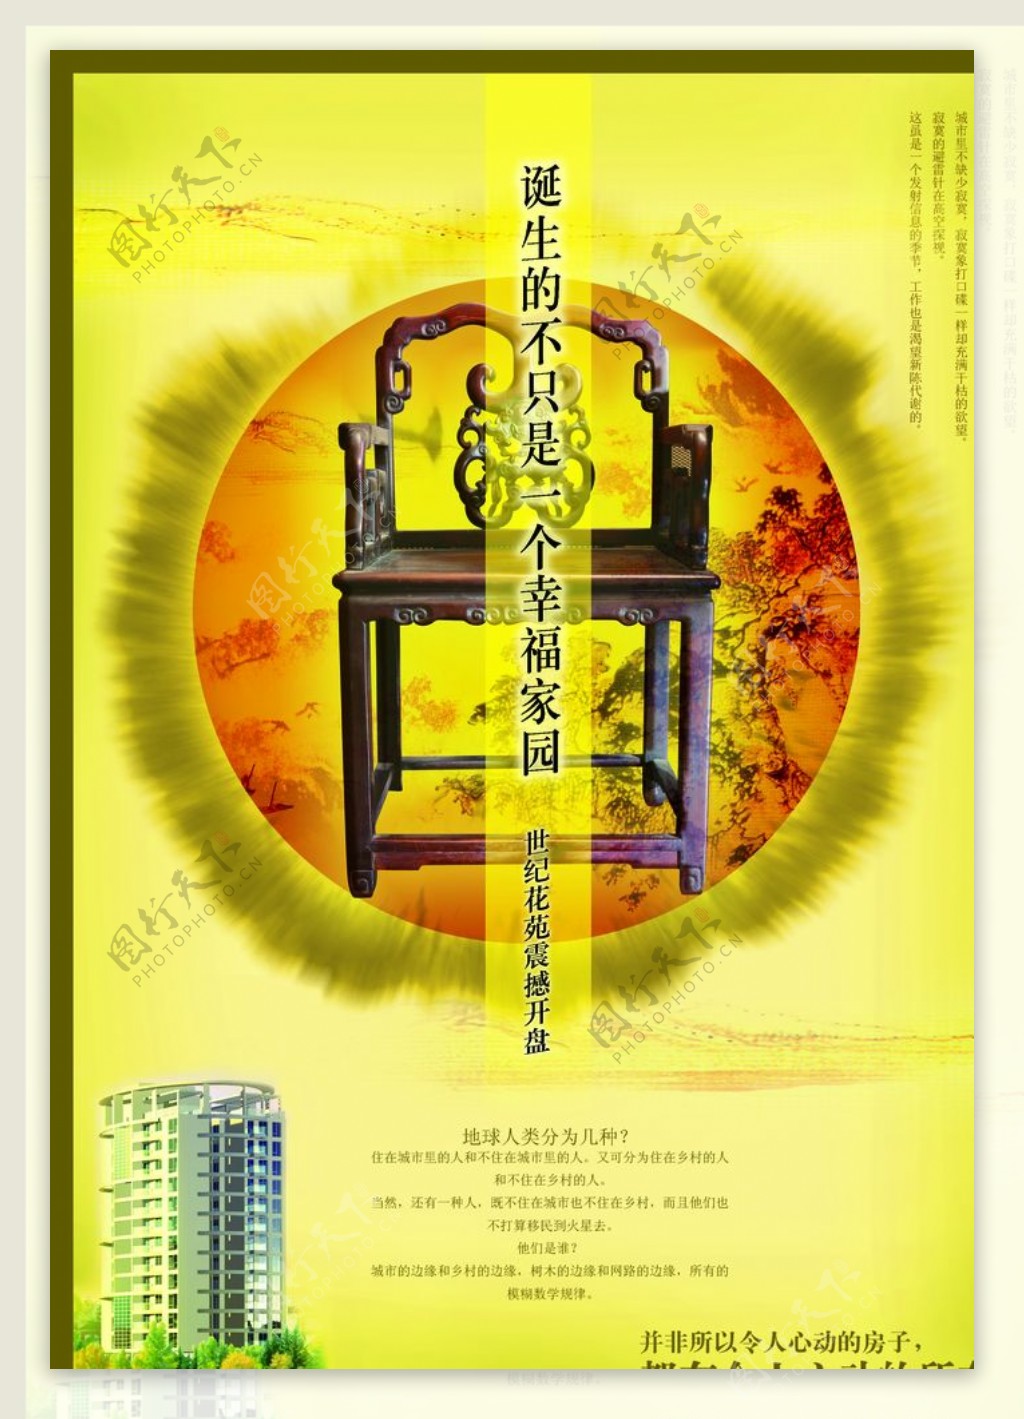 创意尊贵房产金黄色文案宣传海报